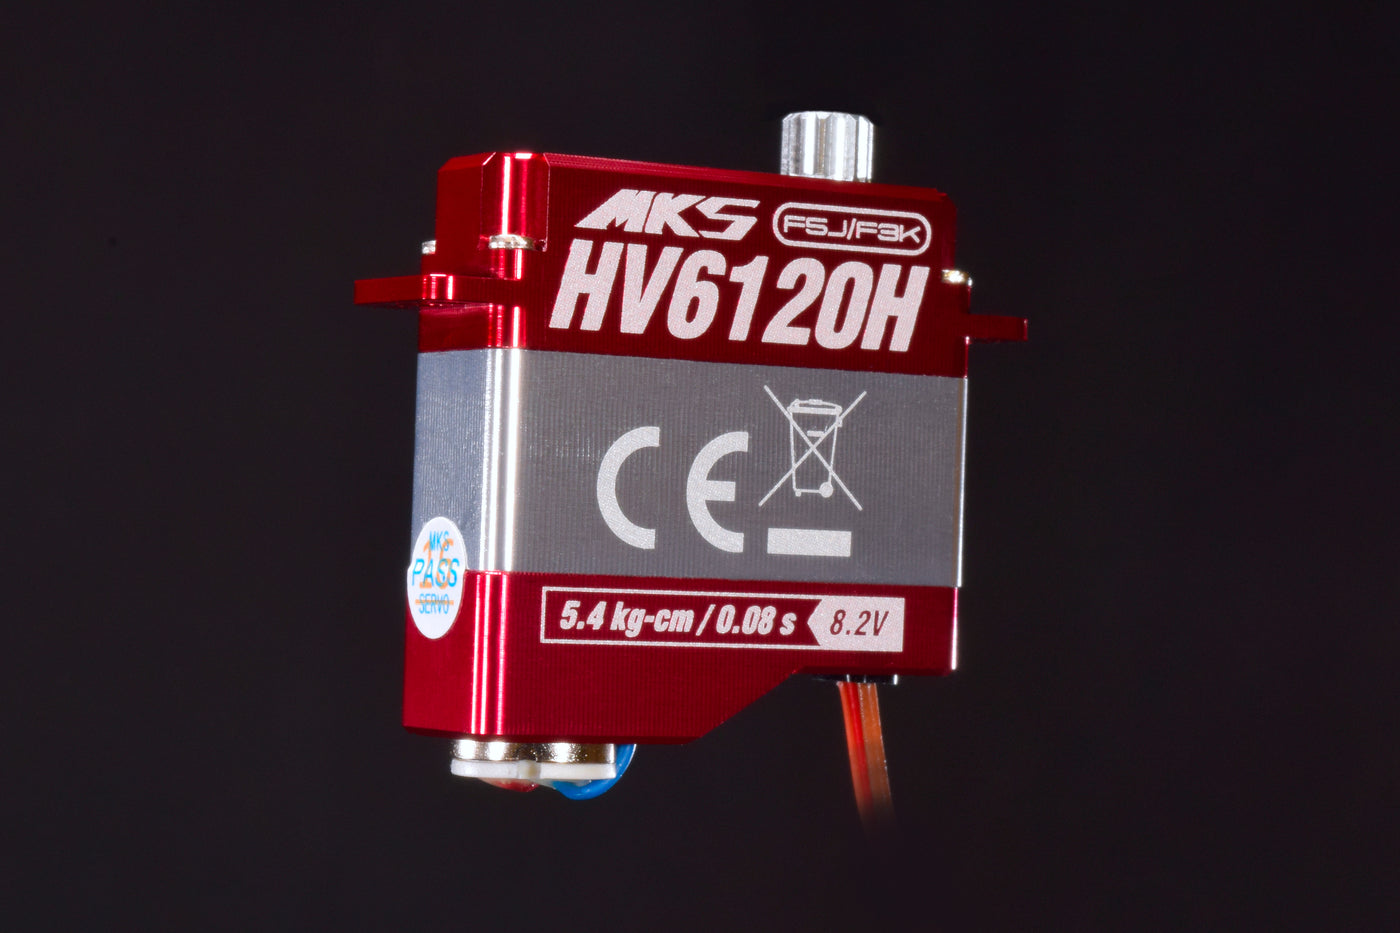 MKS HV6120H - 5.4 kg (74.9 oz-in), 0.08 sec - 11g